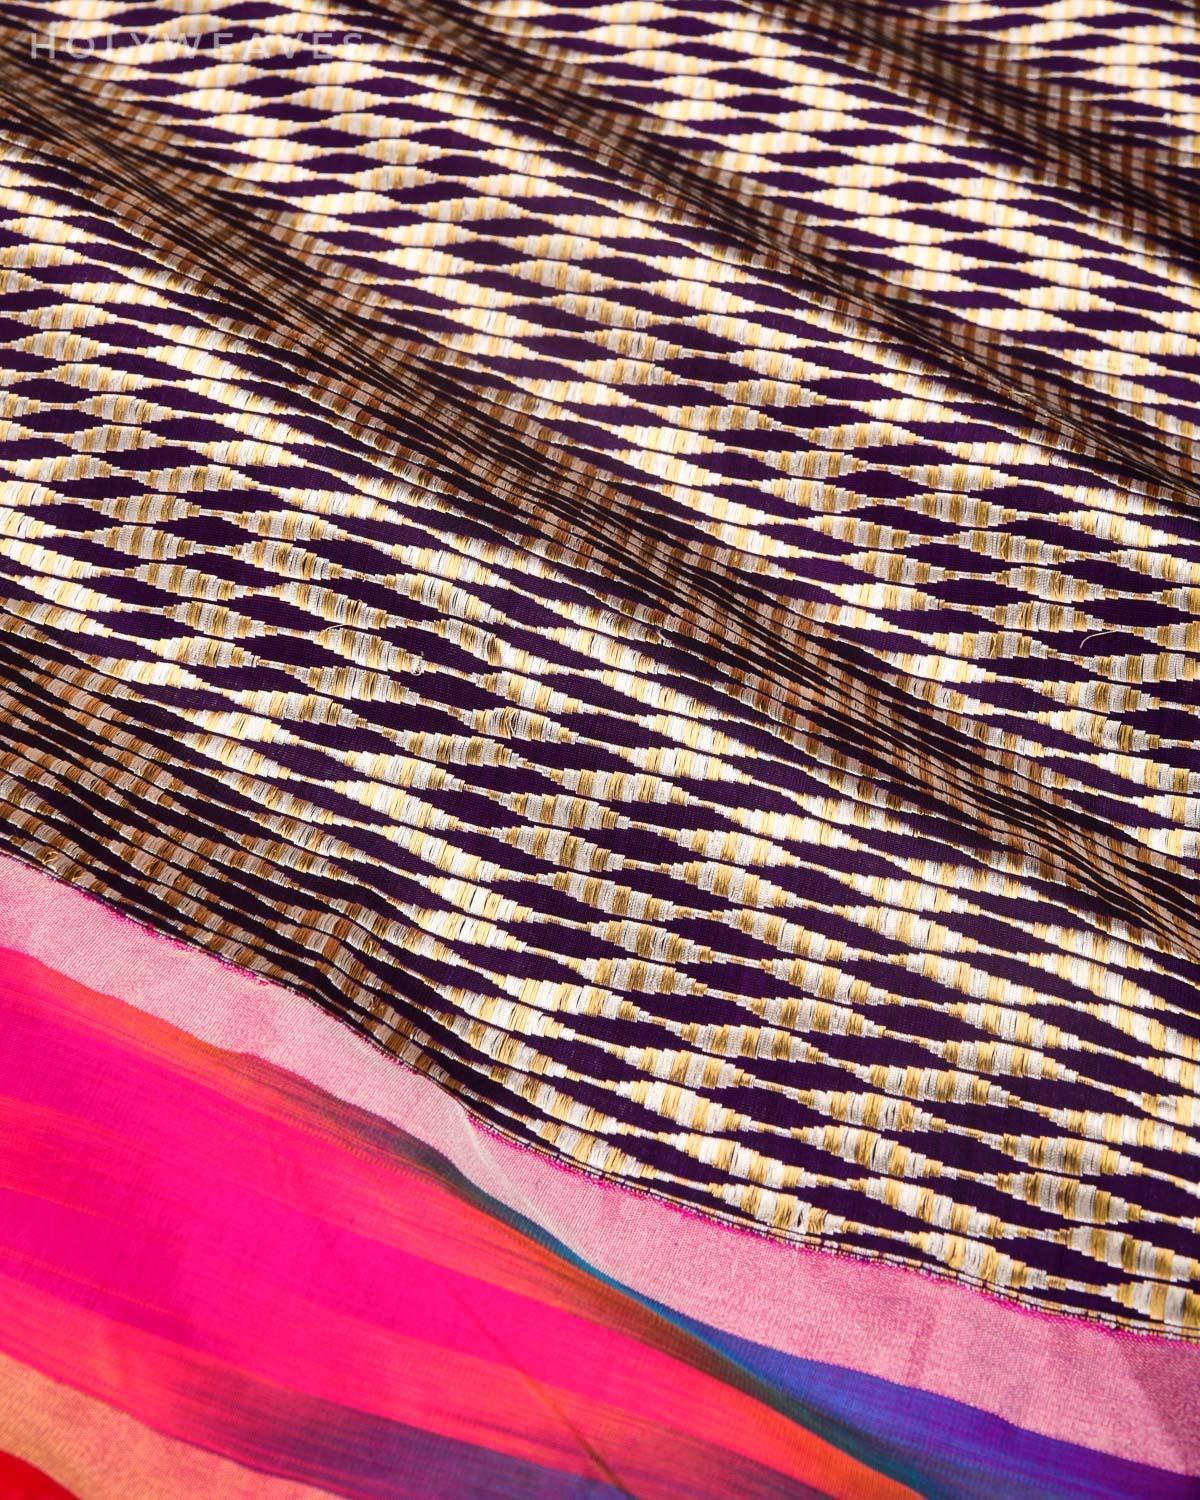 Byzantium Purple Banarasi "Twist" Kadhuan Brocade Handwoven Katan Silk Saree with Multi-color Ikat Kadiyal Border - By HolyWeaves, Benares